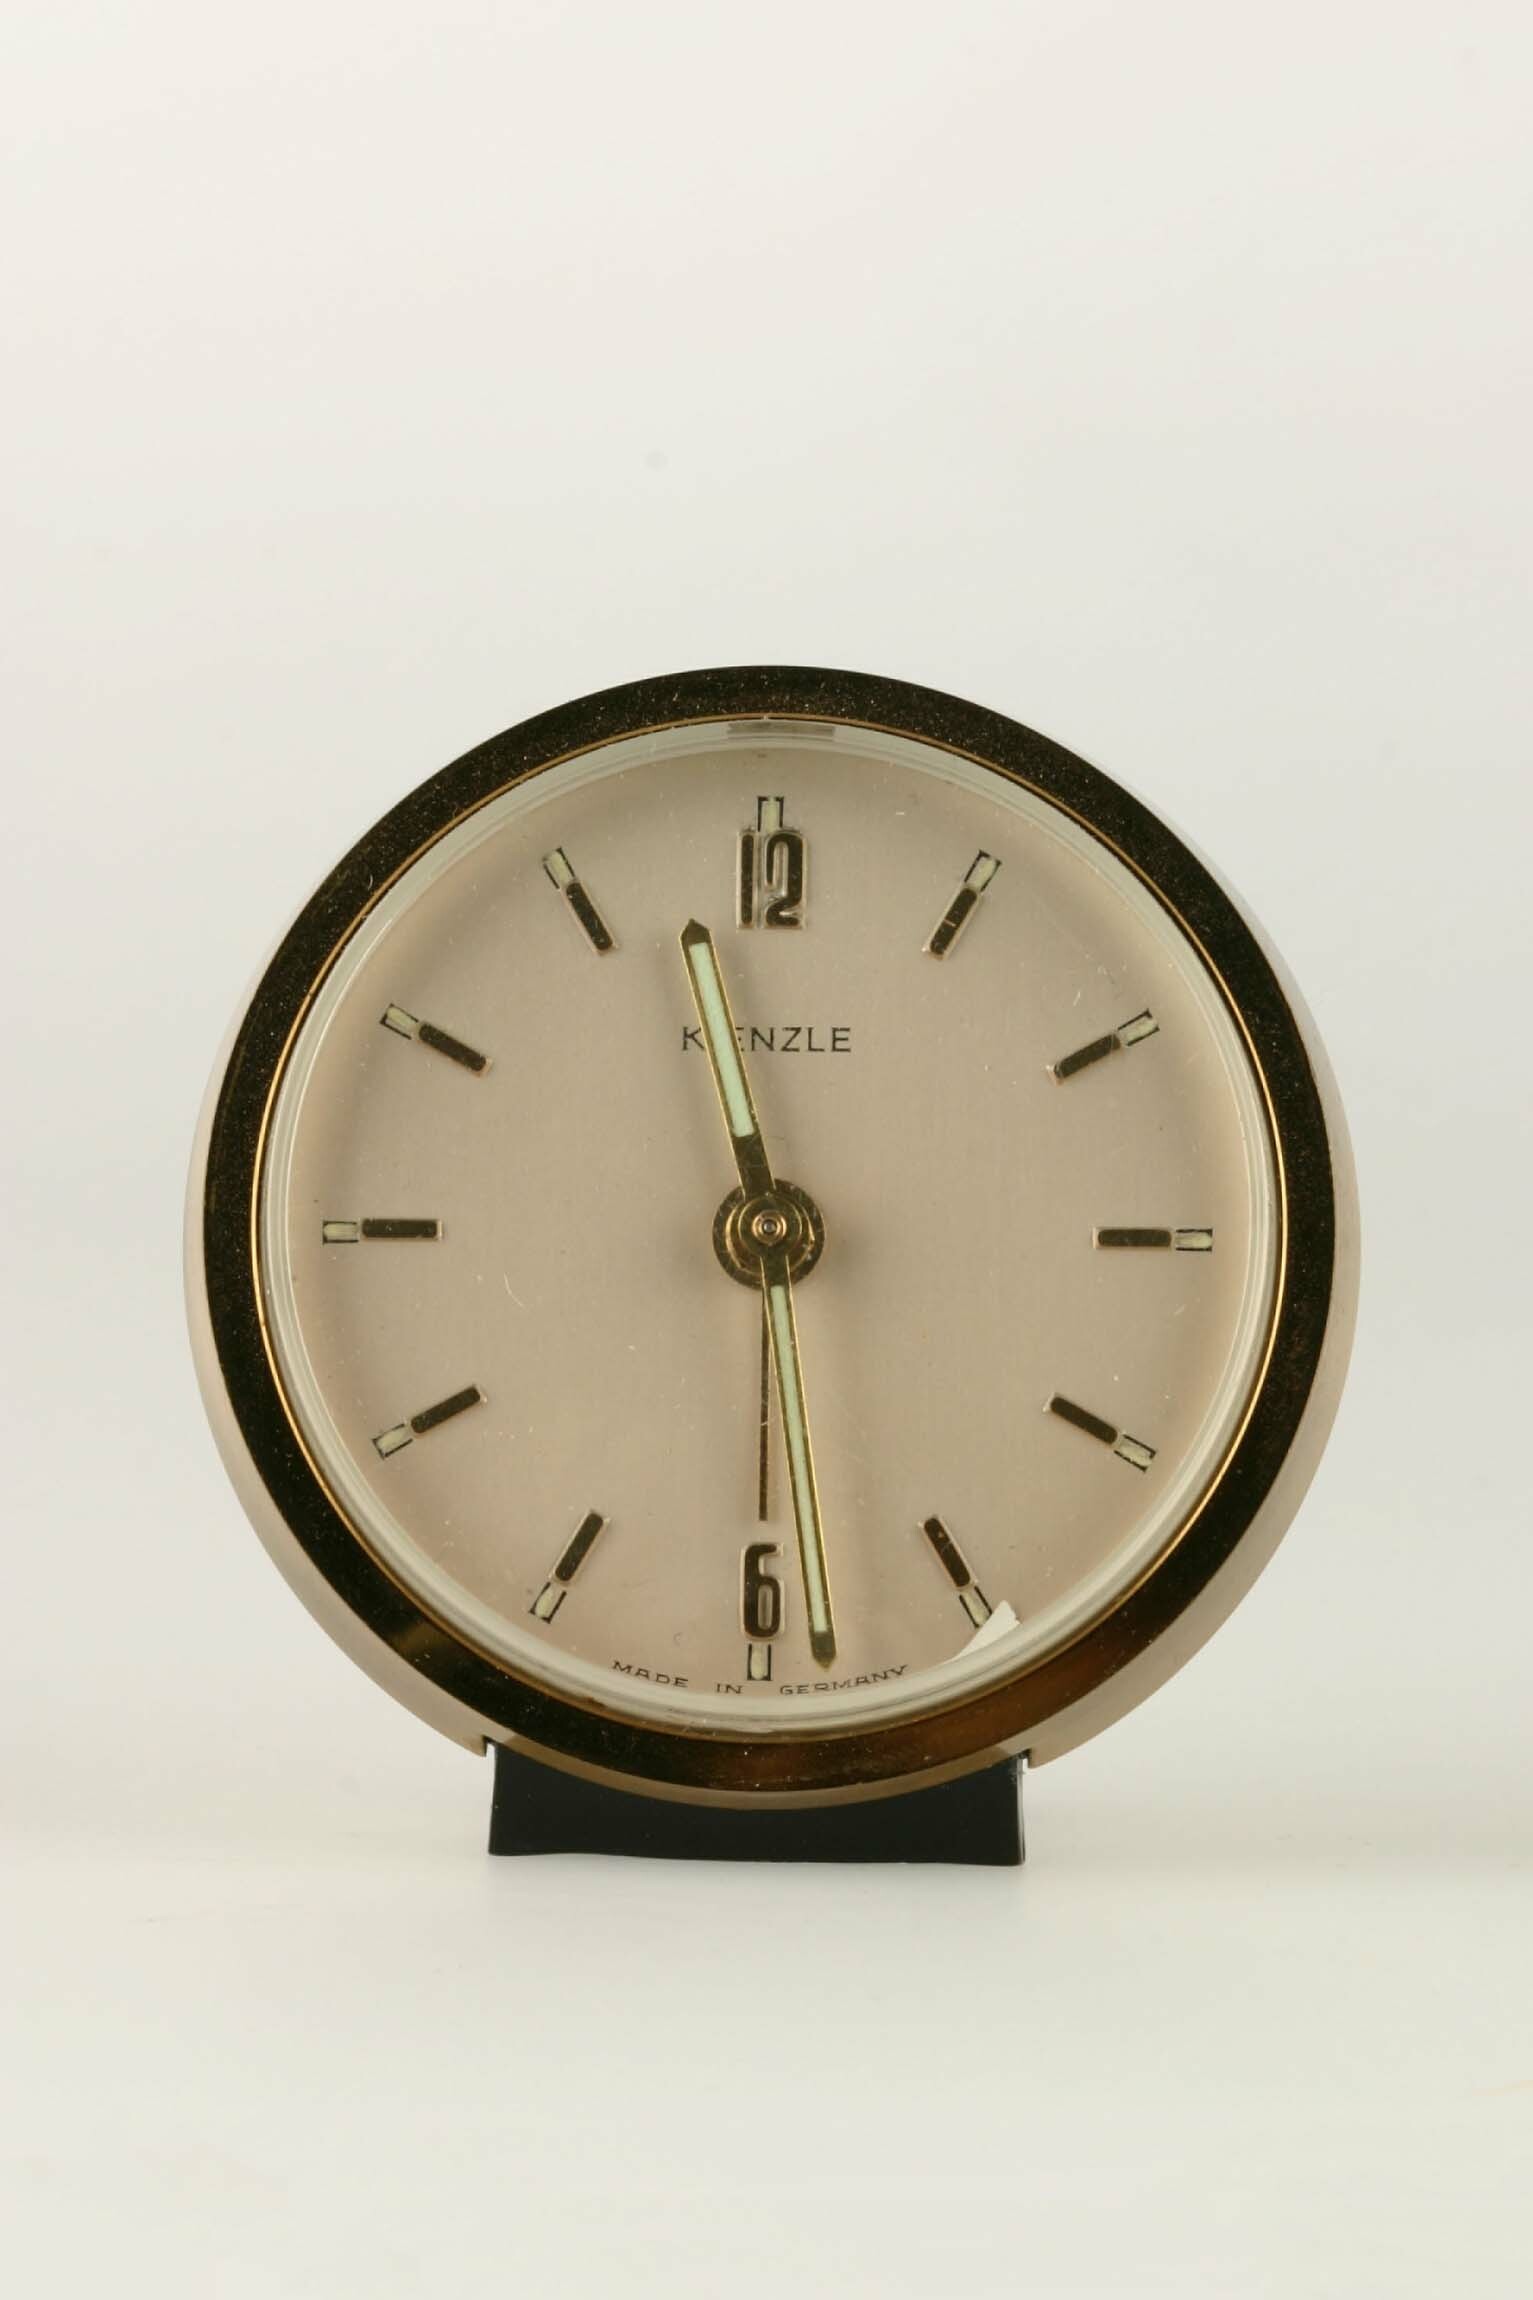 Rückwandglockenwecker, Kienzle, Schwenningen, um 1960 (Deutsches Uhrenmuseum CC BY-SA)